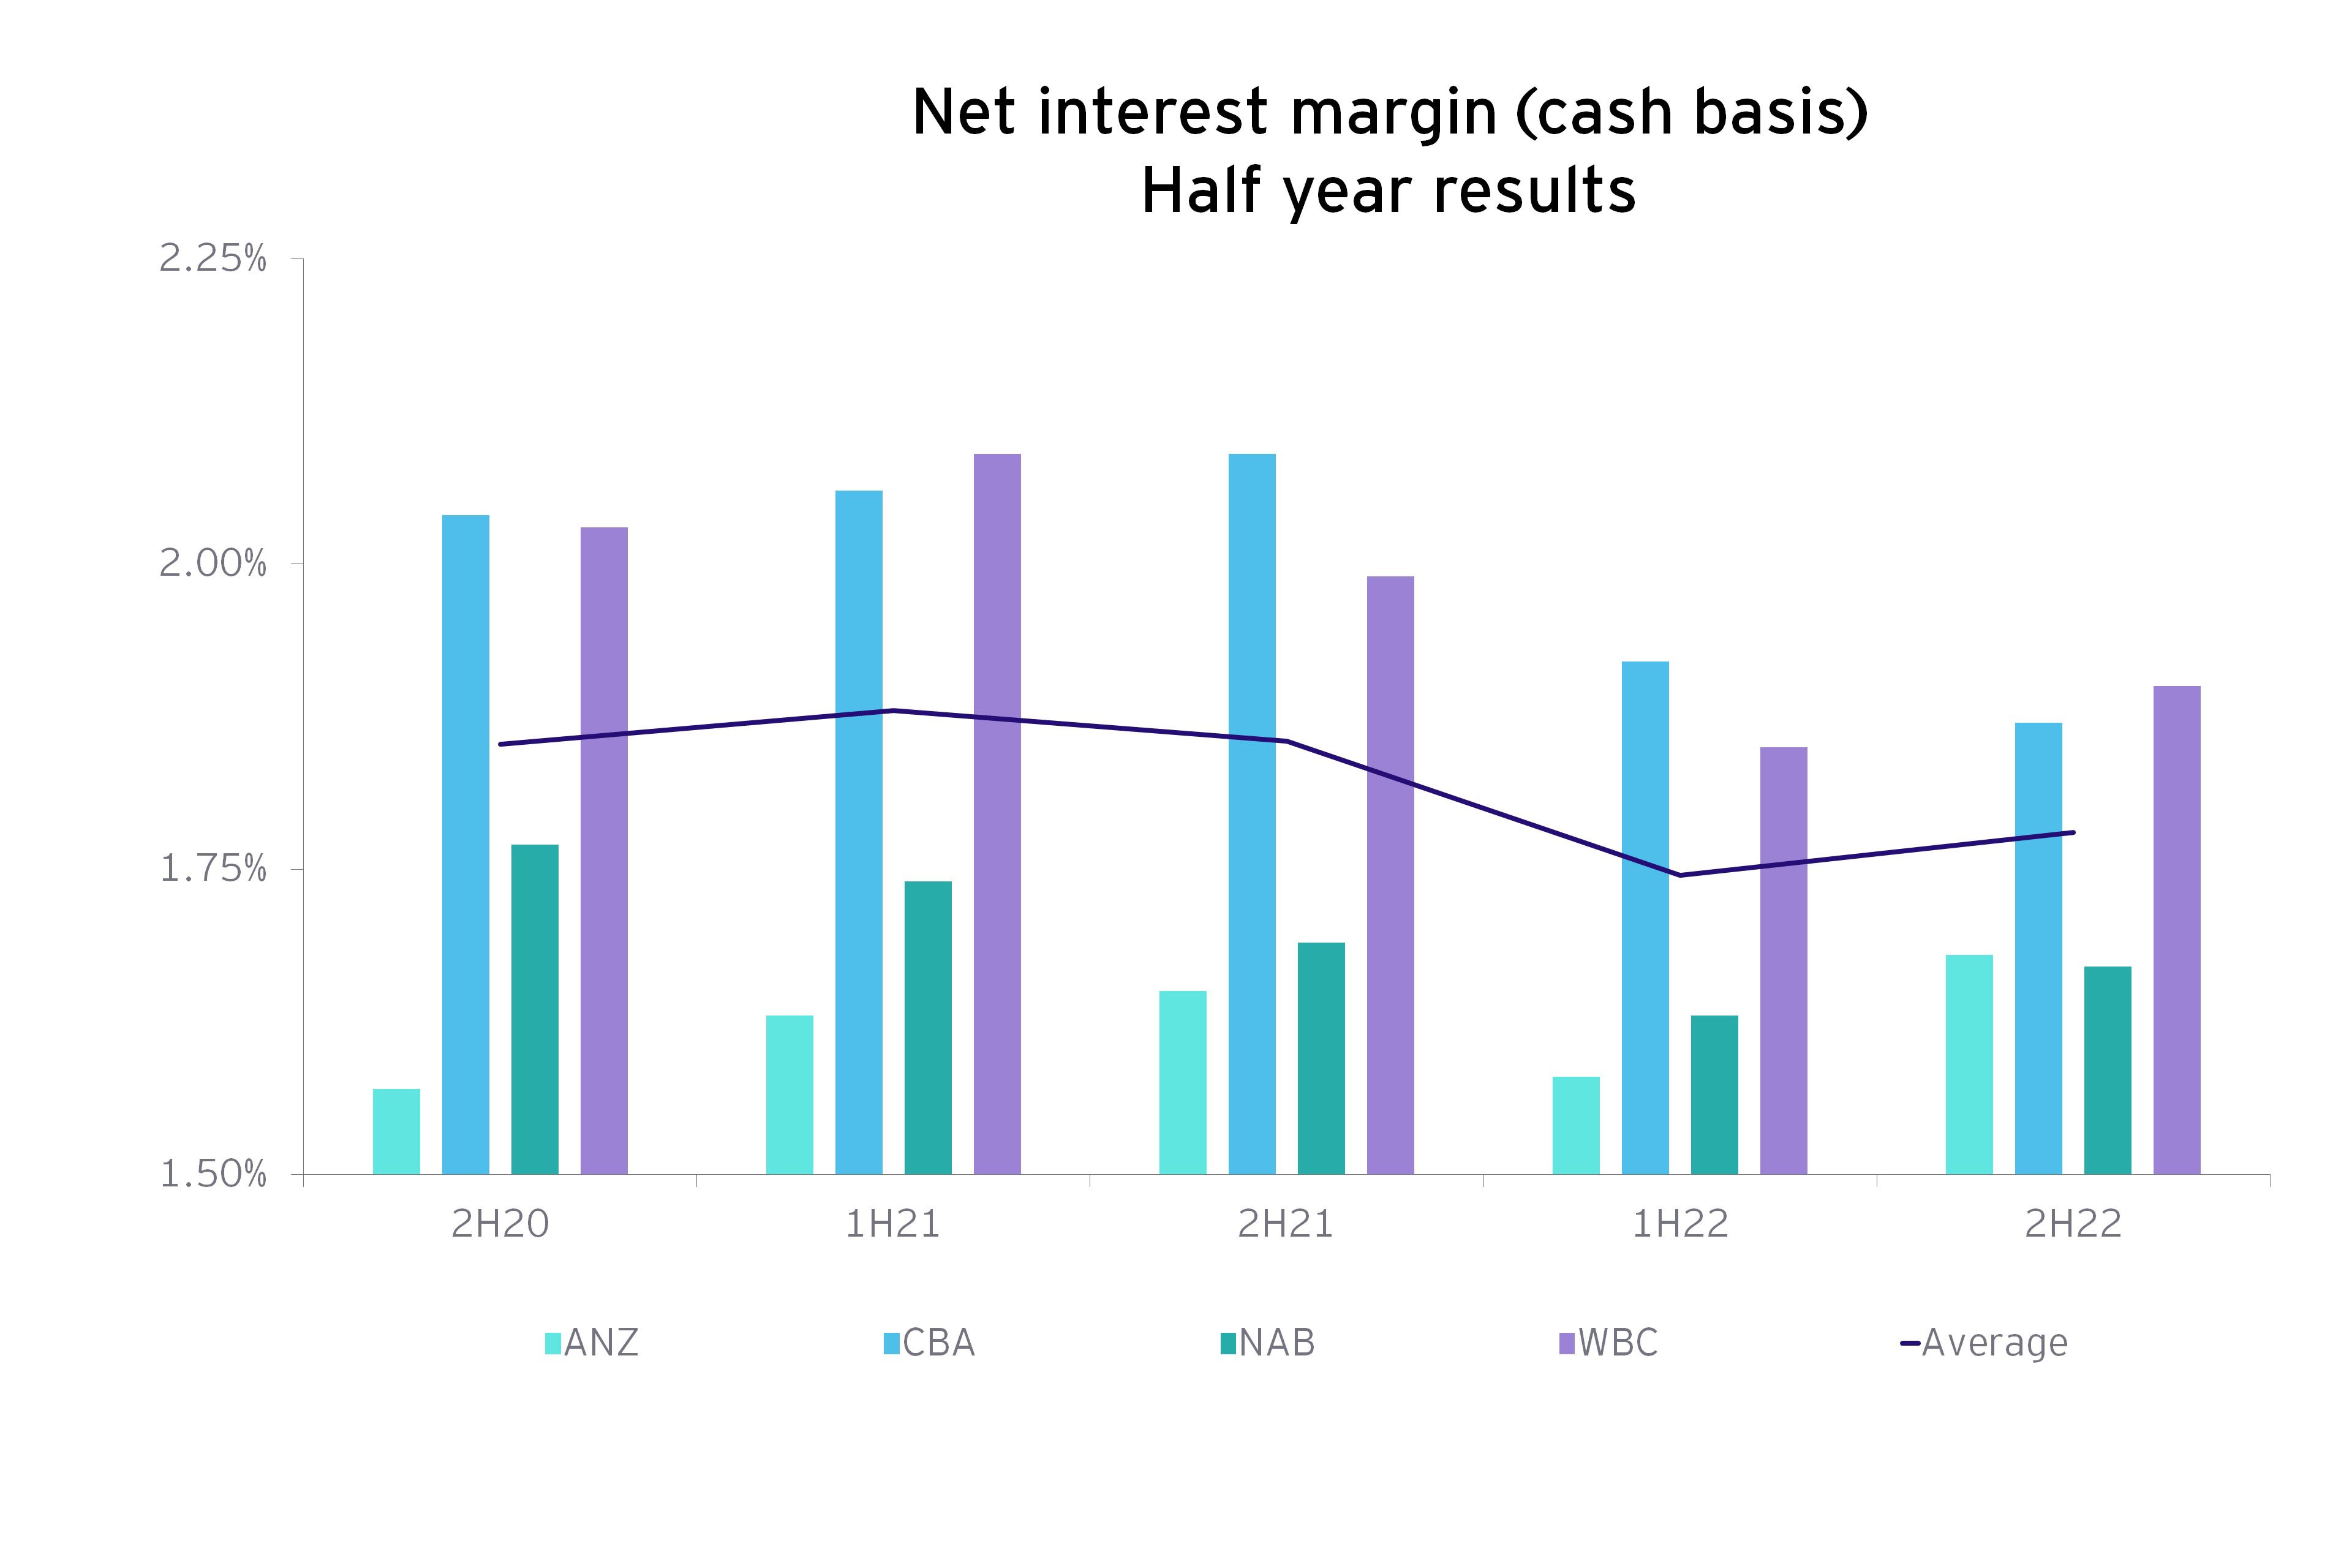 Net interest margin half year results